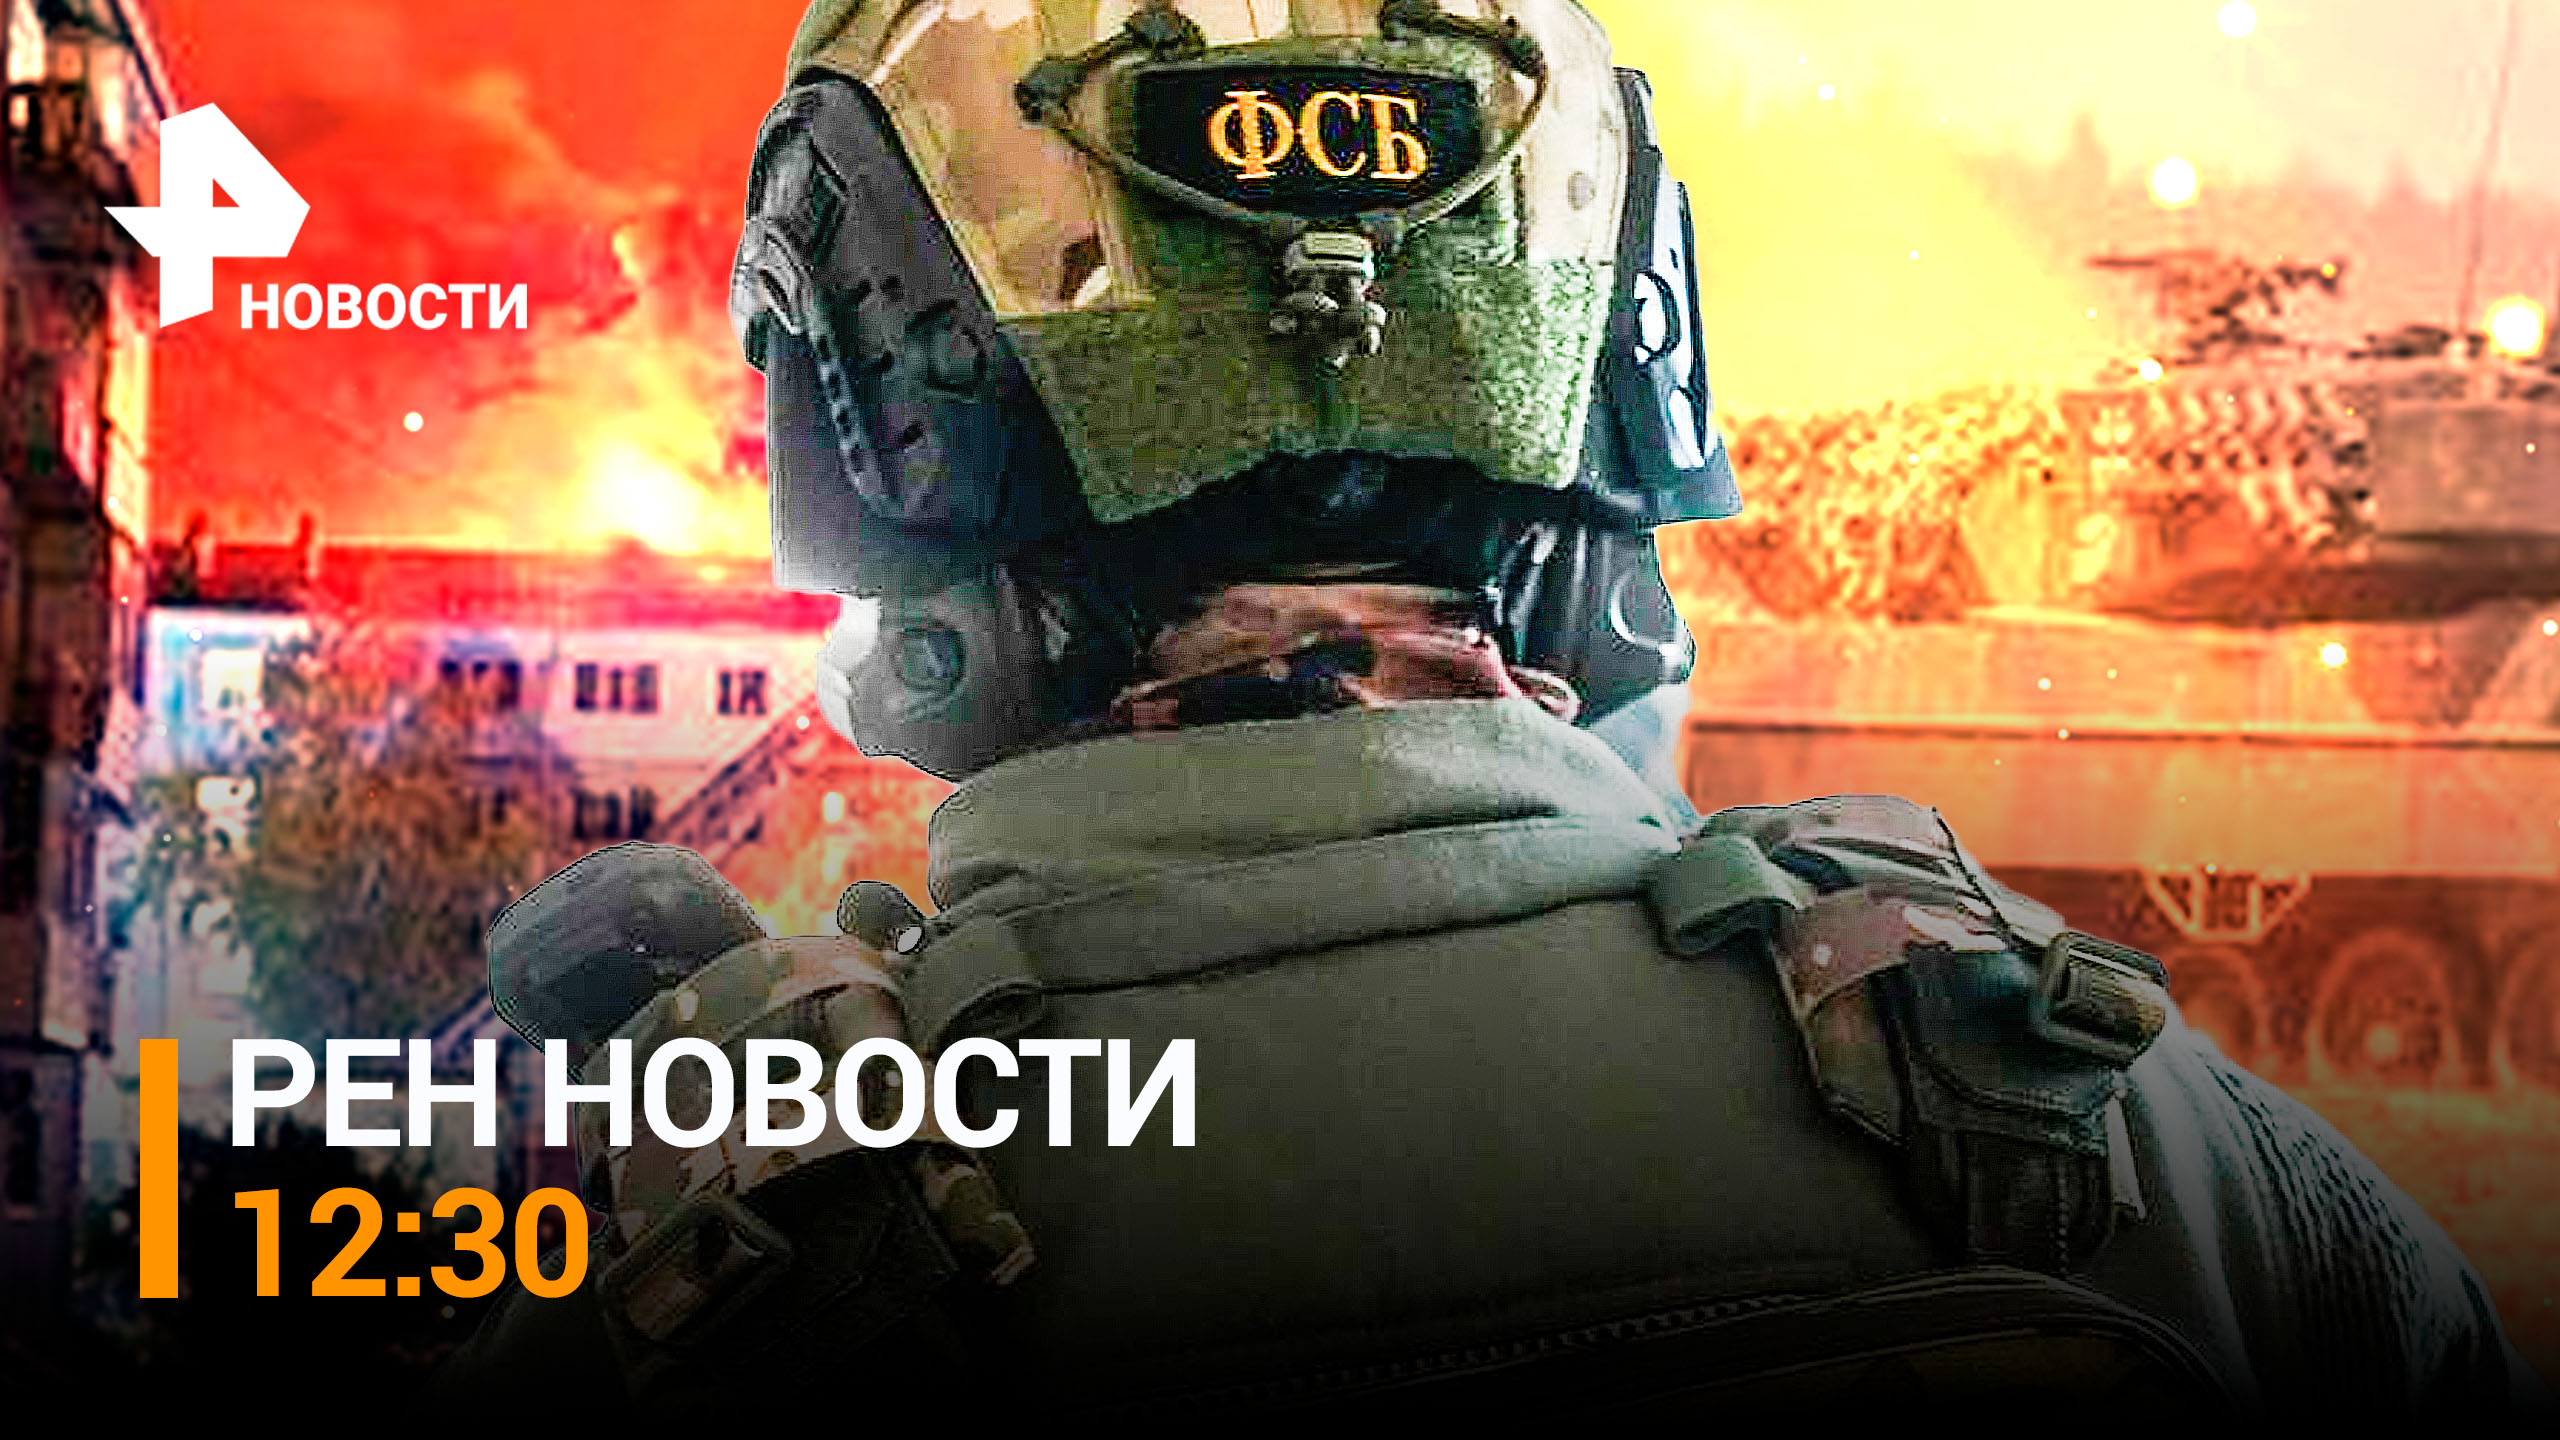 Задержание шпиона ЛНР: работал на Украину. США оставили Киев без денег / РЕН Новости 12:30 от 02.10